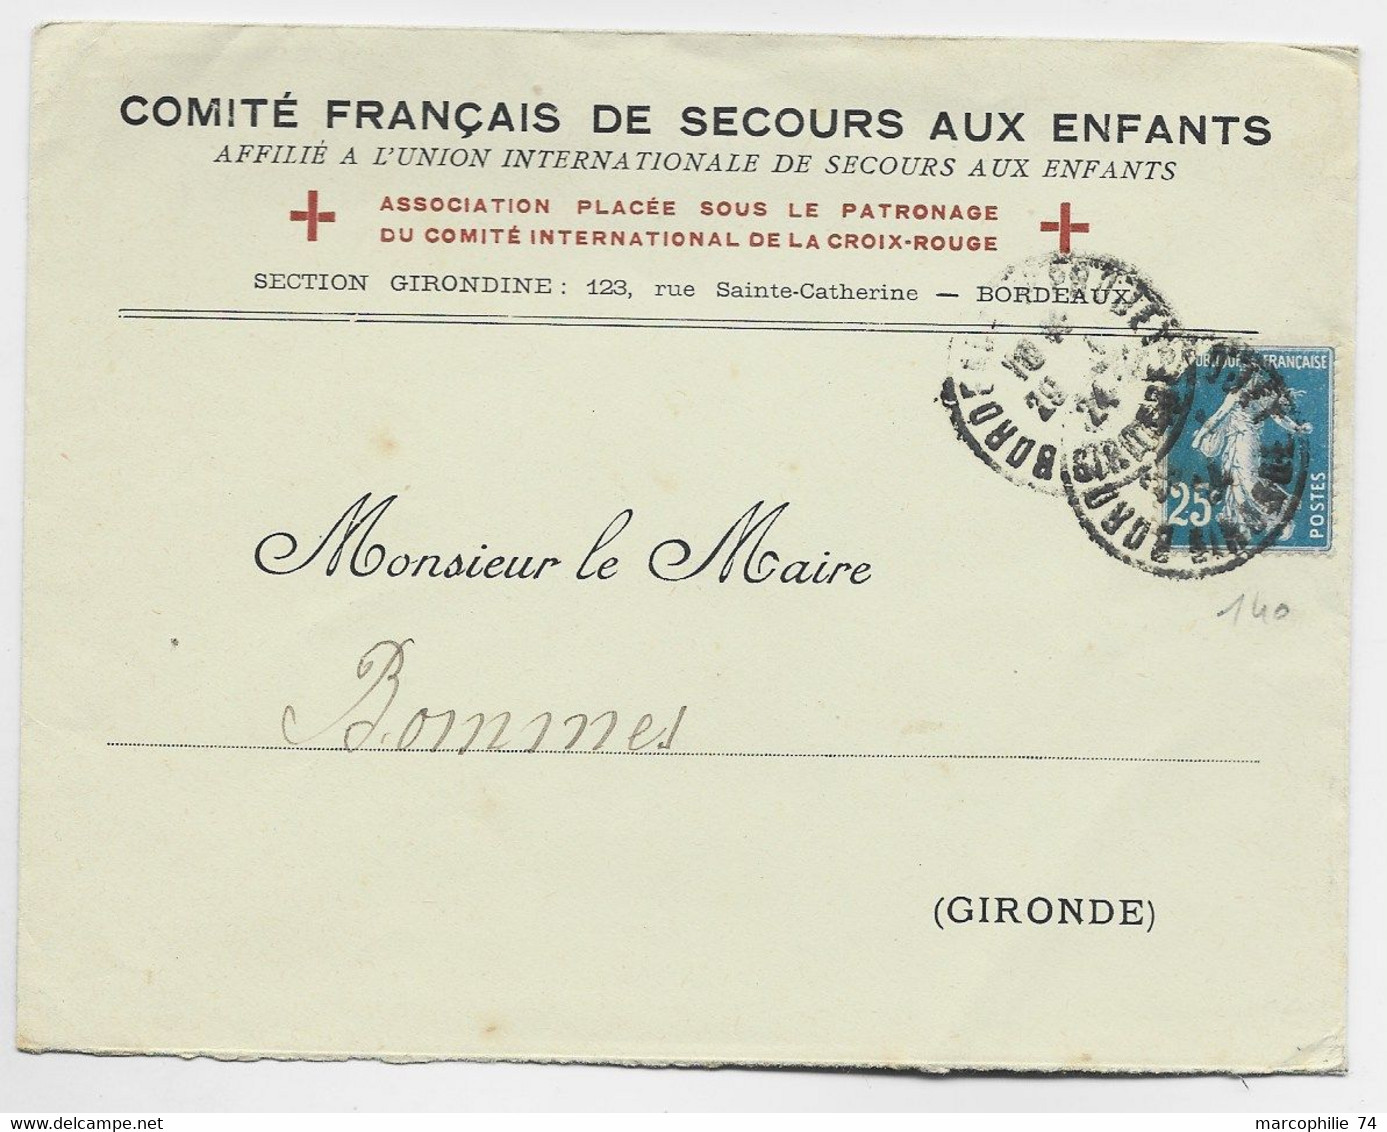 FRANCE N° 140 DEF LETTRE ENTETE COMITE FRANCAIS DE SECOURS AUX ENFANTS BORDEAUX 1924 GIRONDE - Red Cross